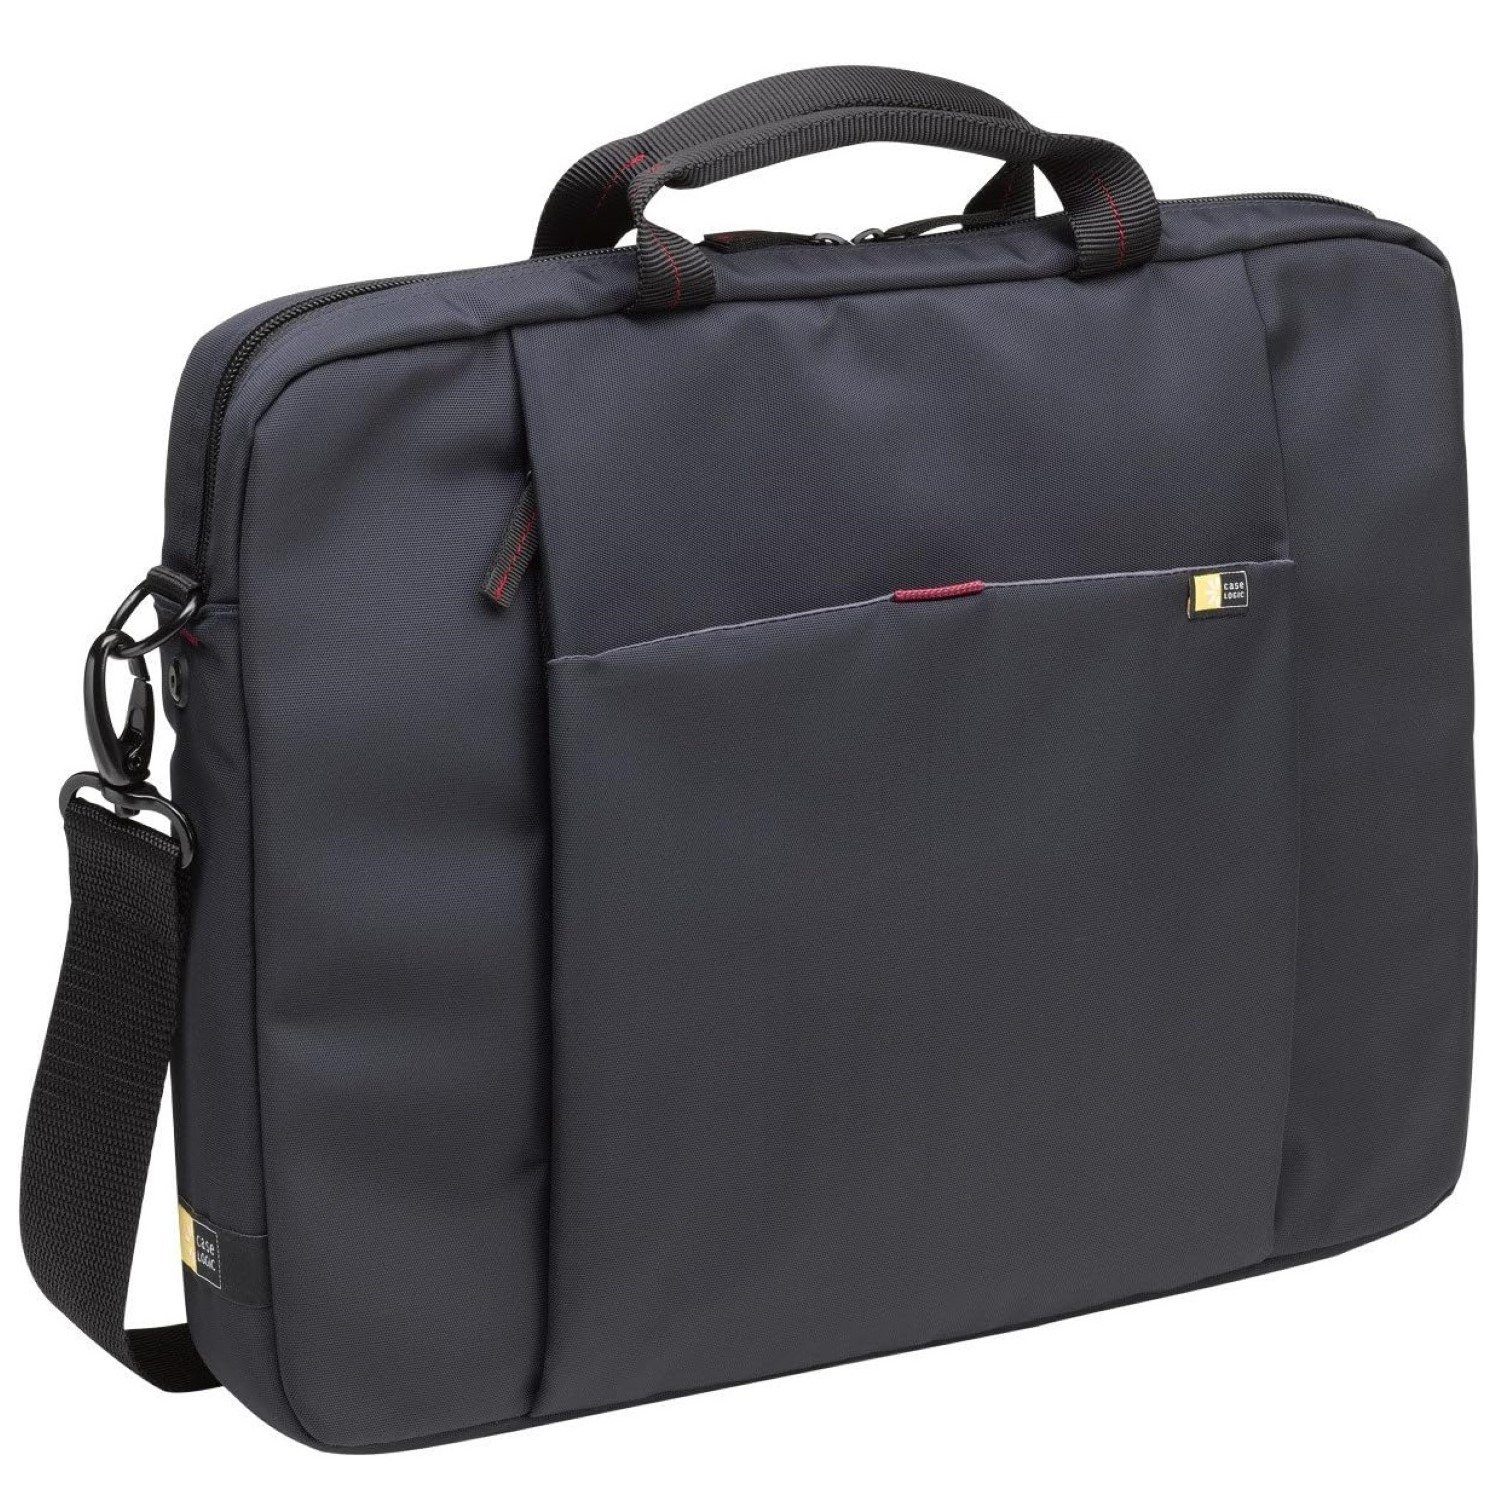 Case Logic Laptoptasche Notebook-Tasche Nylon Schwarz 15,6" bis 16", Gepolstertes Laptop-Sleeve Handgriff und Schultergurt